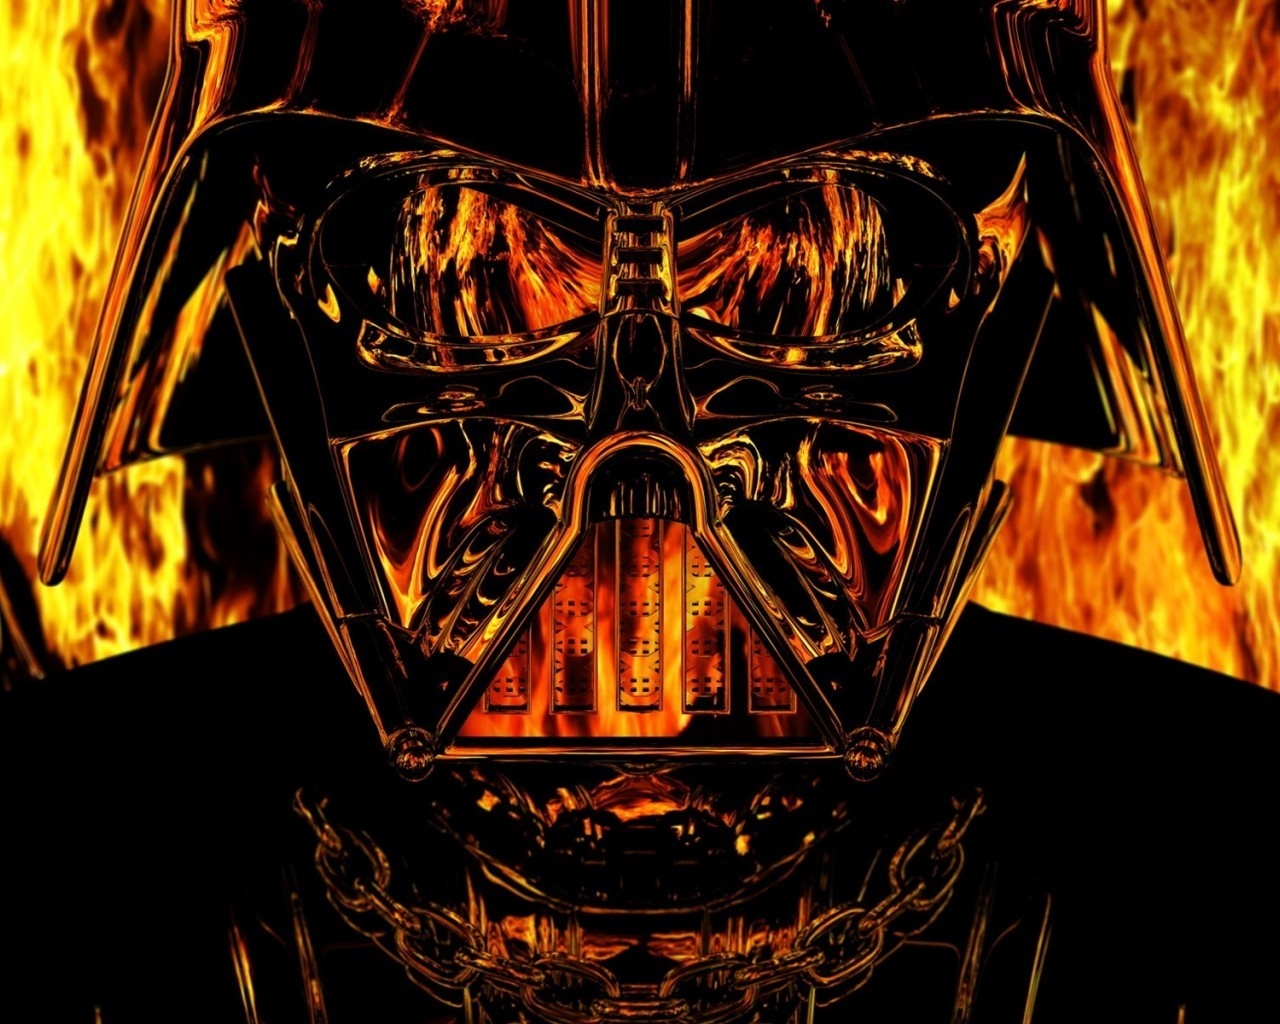 Darth Vader Star Wars for 1280 x 1024 resolution